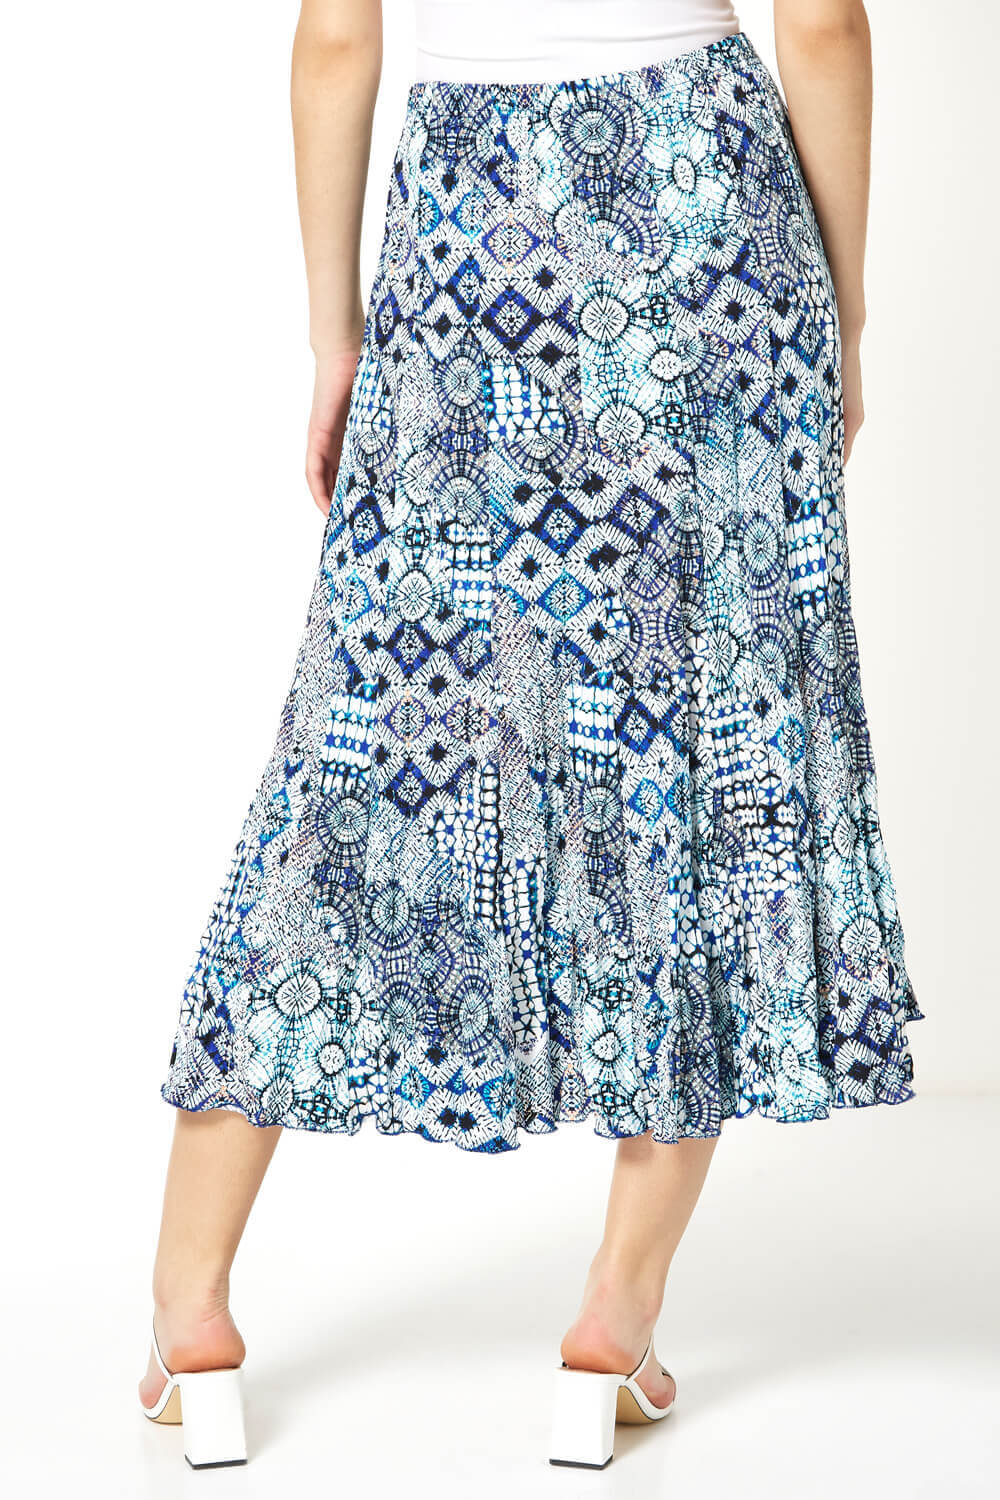 Blue Crinkle Geometric Print Midi Skirt, Image 2 of 4